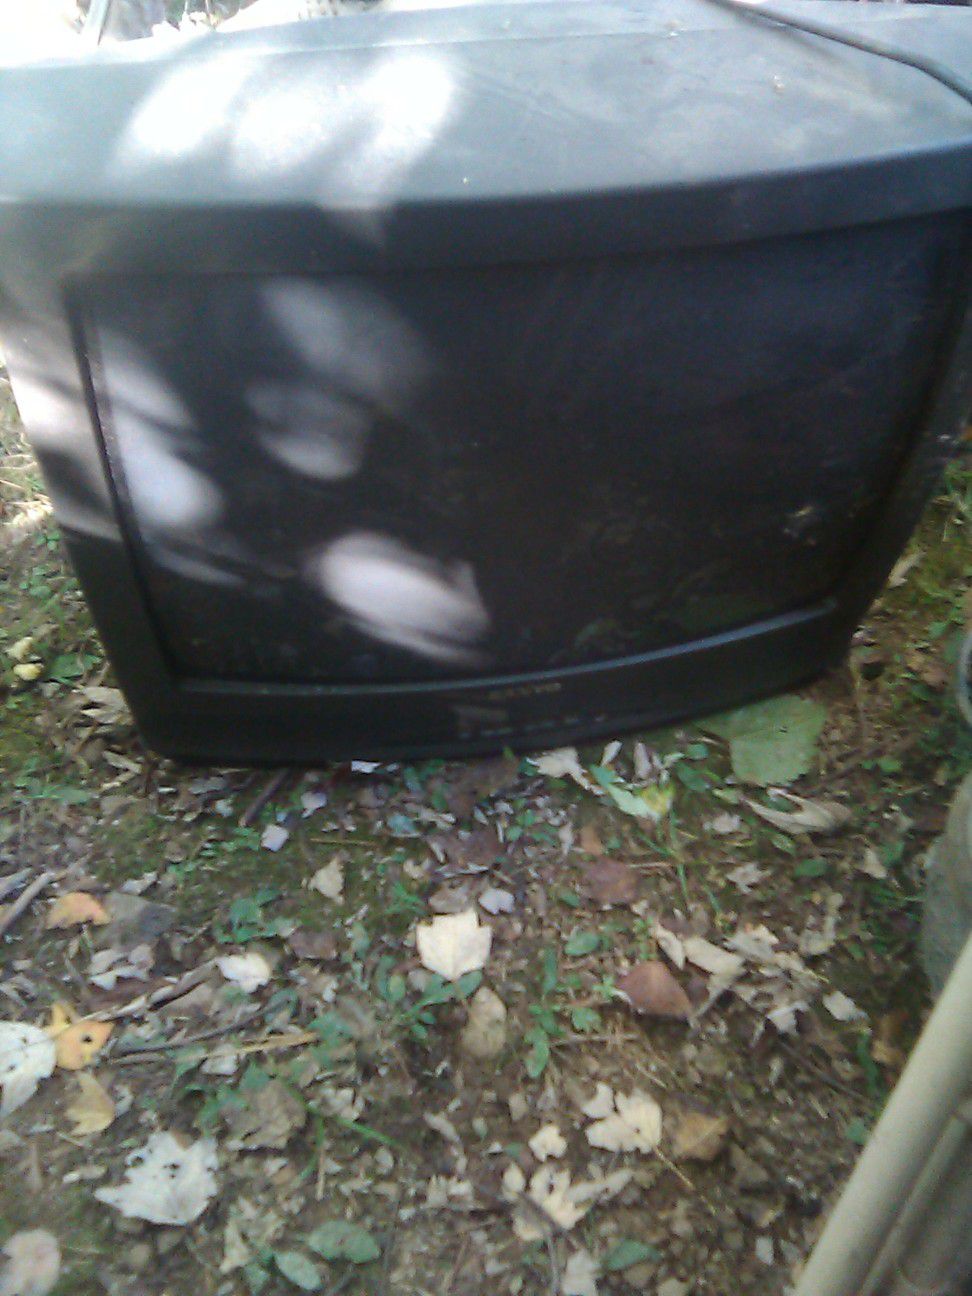 Sanyo tv, 30 inch'ish